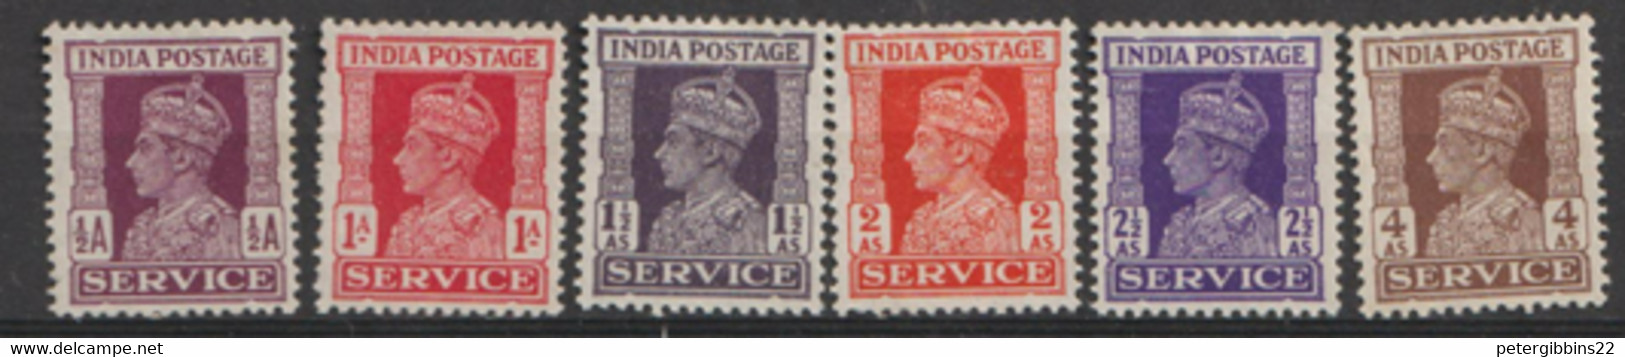 India  1959  Serviice  Various Values   Mounted Mint - Nuovi